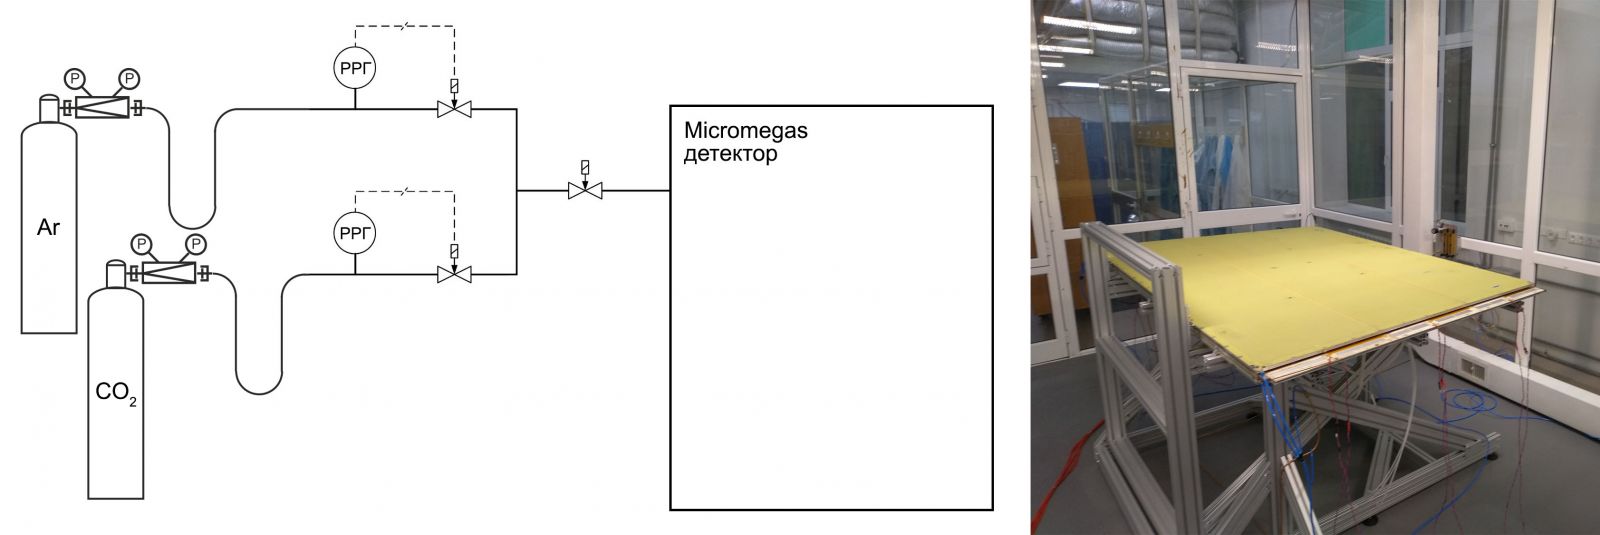 Расходомеры EL-FLOW Prestige в схеме динамического приготовления смеси газов для Micromegas детектора